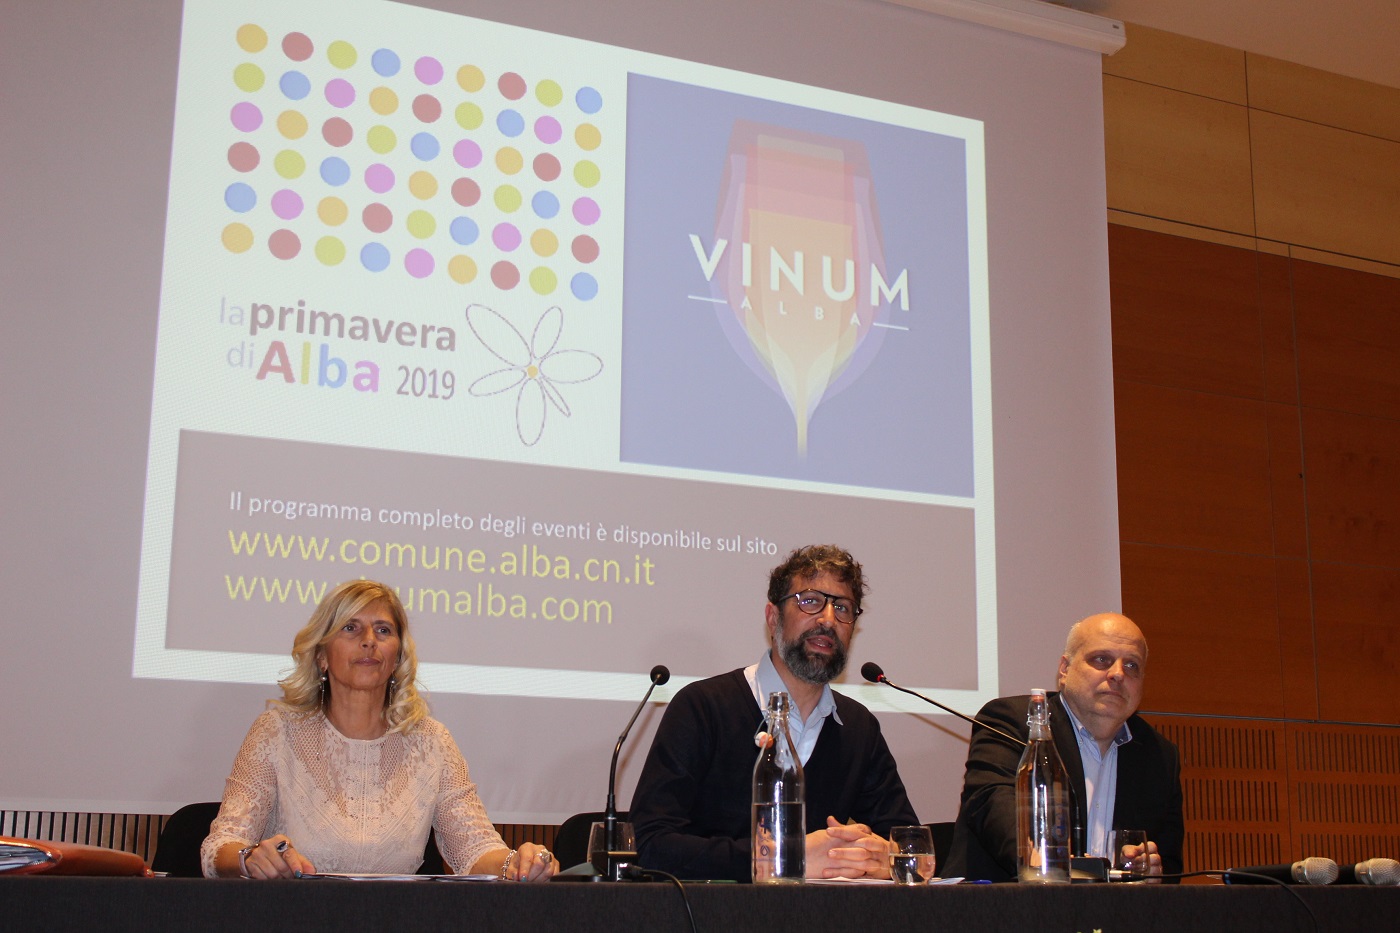 Foto ALBA: Vinum e la sua Primavera, gli eventi e la dichiarazione del sindaco